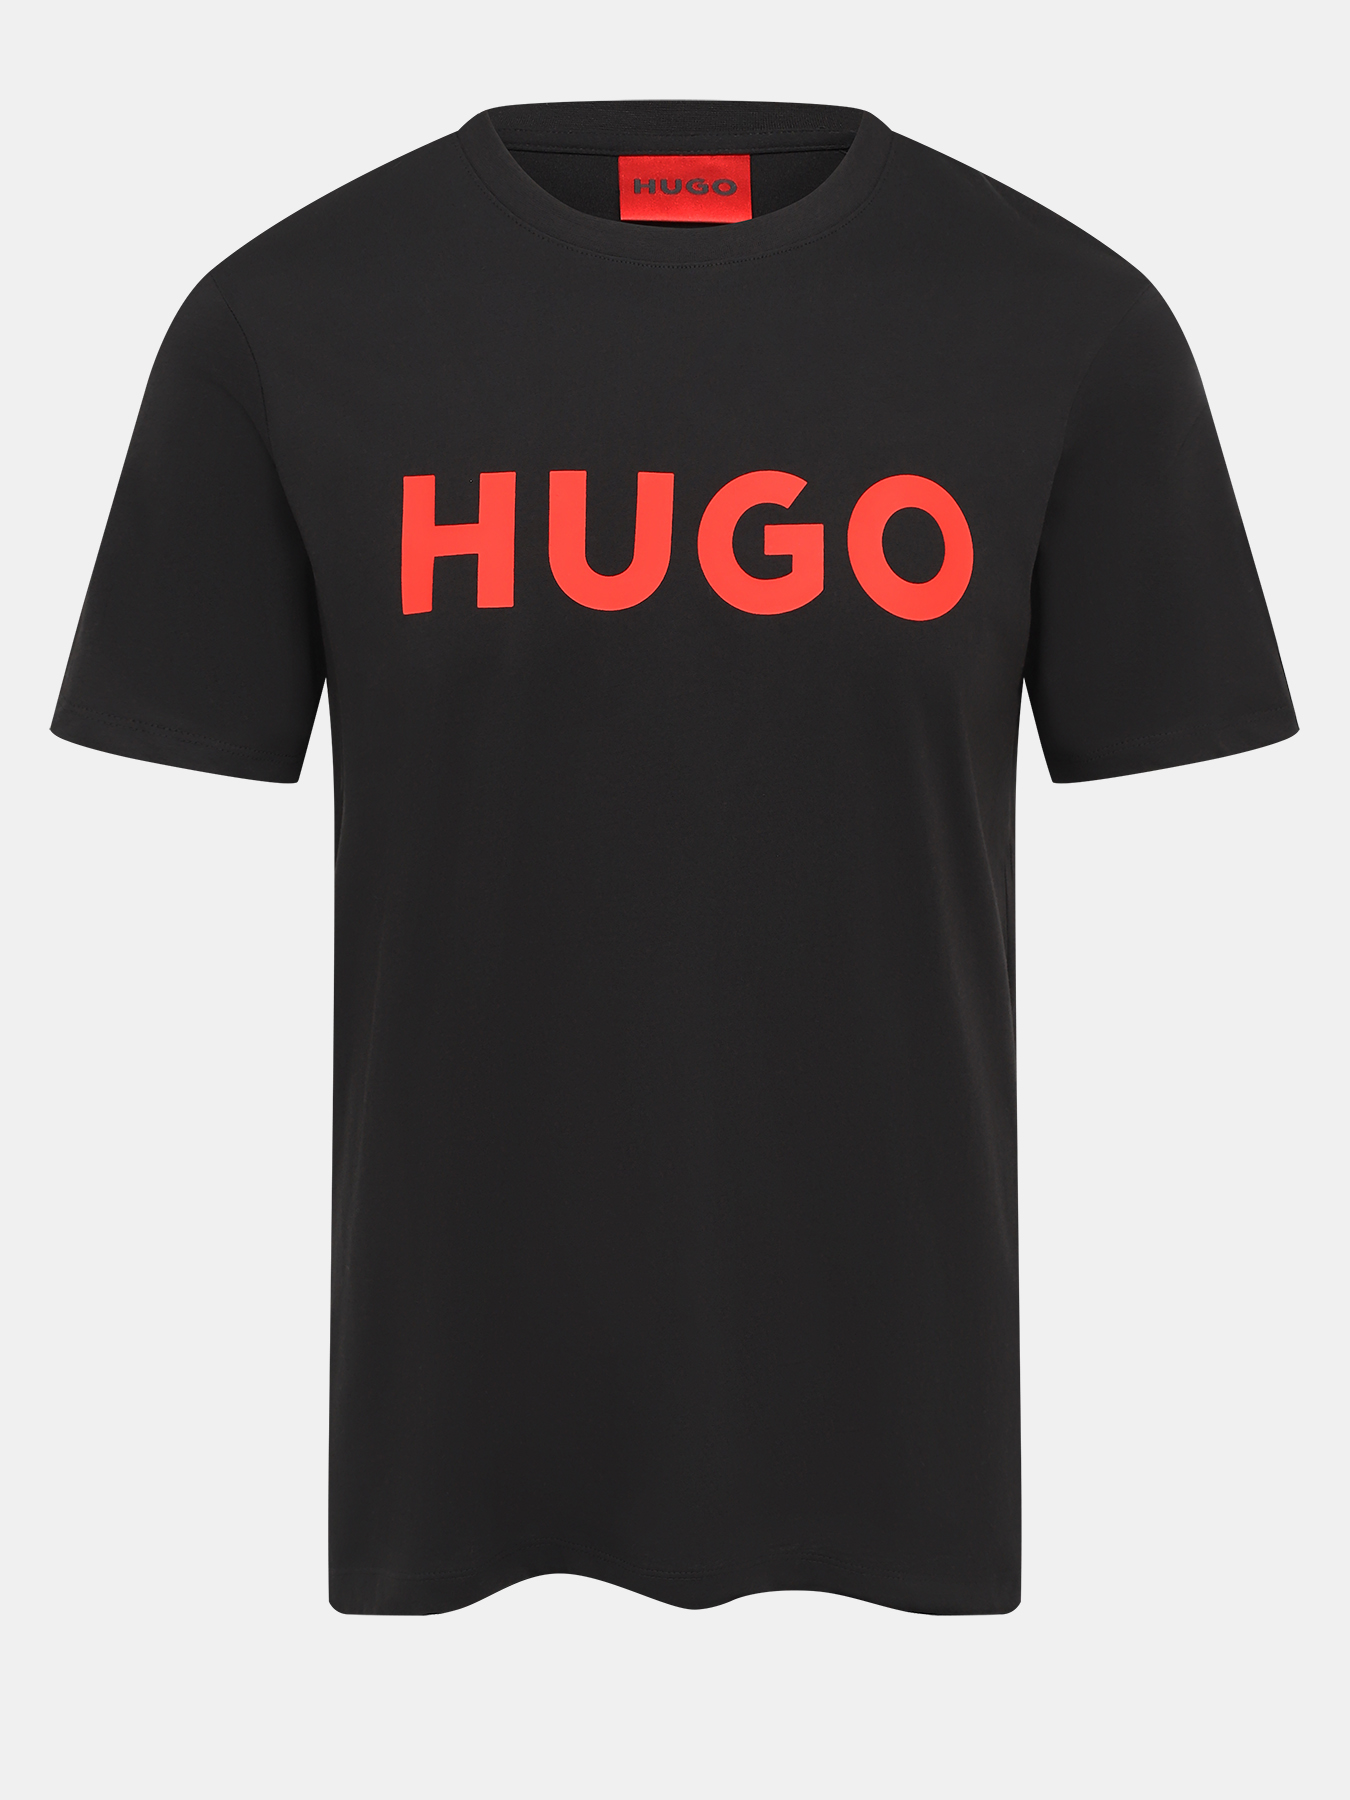 Купить футболку hugo. Футболка Hugo Dulivio. Футболка Hugo Boss. Футболка Hugo мужская черная. Мужская футболка Hugo оригинал.